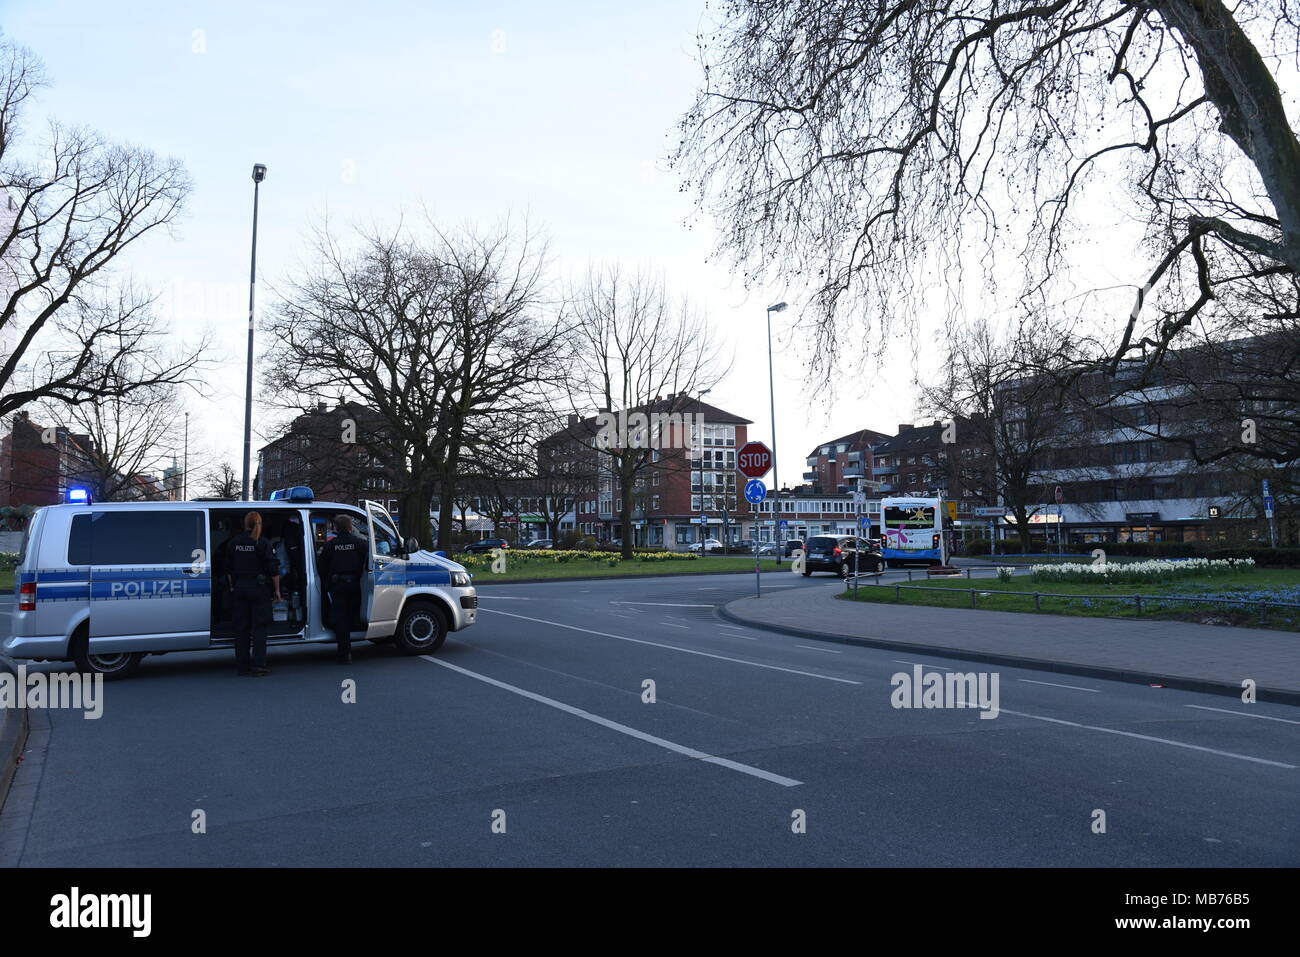 April 7, 2018 - Münster, Deutschland - einen Polizeiwagen gesehen die Bewachung der Altstadt nach dem Angriff. Zwei Menschen getötet und etwa 20 Menschen wurden verletzt, während ein grauer VW-Transporter, in eine Menge Leute, die um die kiepenkerl Statue in der Altstadt von Münster Stadt sitzen an 15 hatte: 27 lokale Zeit am Samstag. Nach dem Angriff der Polizei Behörde hat fast alle Straßen rund um die Innenstadt für die Sicherheit Bedenken blockiert. Auch die Fußgänger wurden nicht erlaubt, in der Nähe der Straßen zu gehen. Credit: Saad Shahriar/SOPA Images/ZUMA Draht/Alamy leben Nachrichten Stockfoto